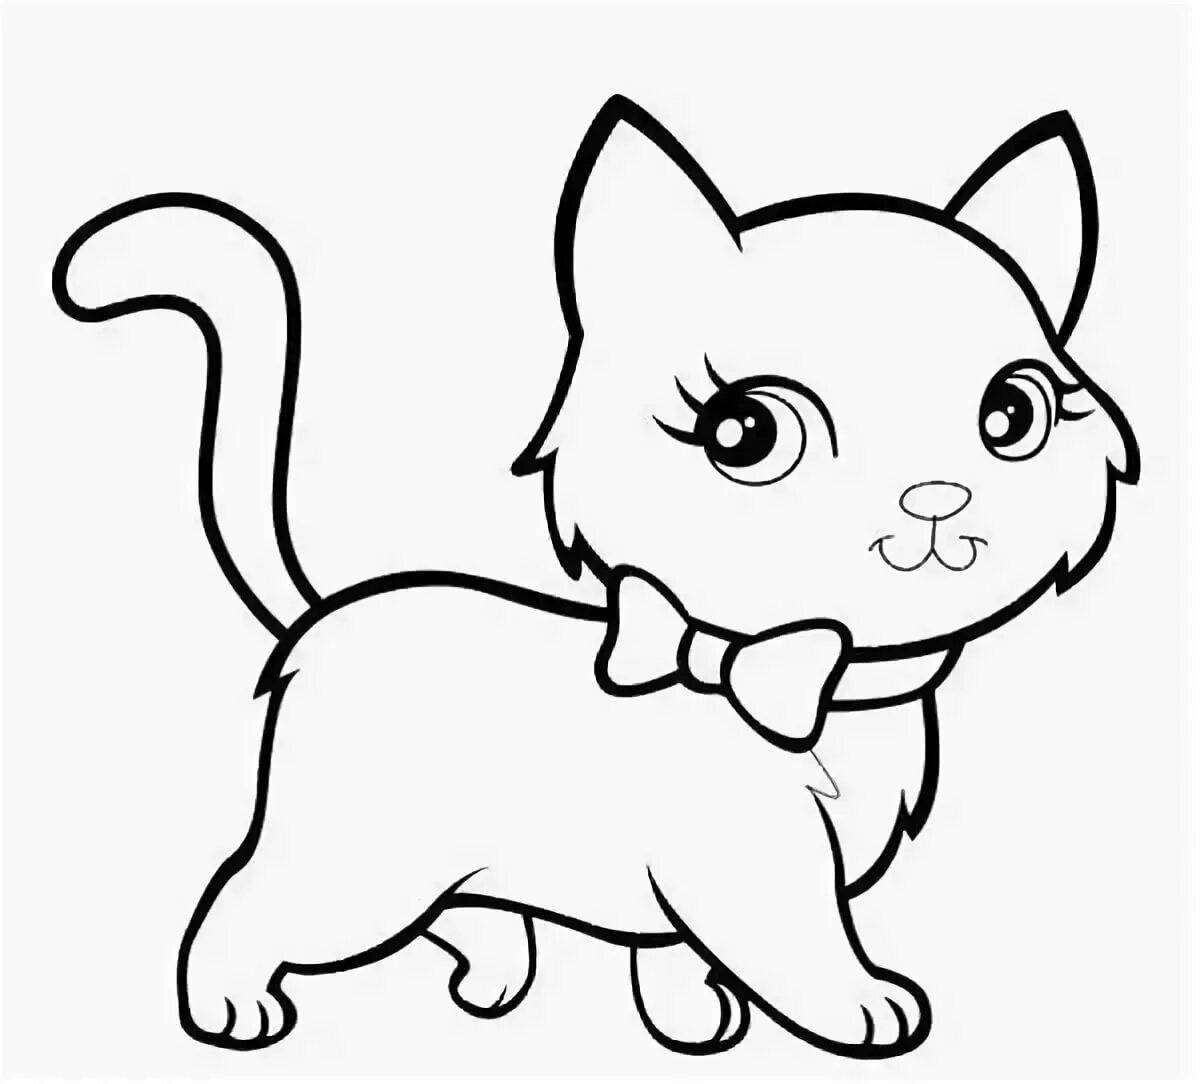 Забавная раскраска кошка для детей 4-5 лет